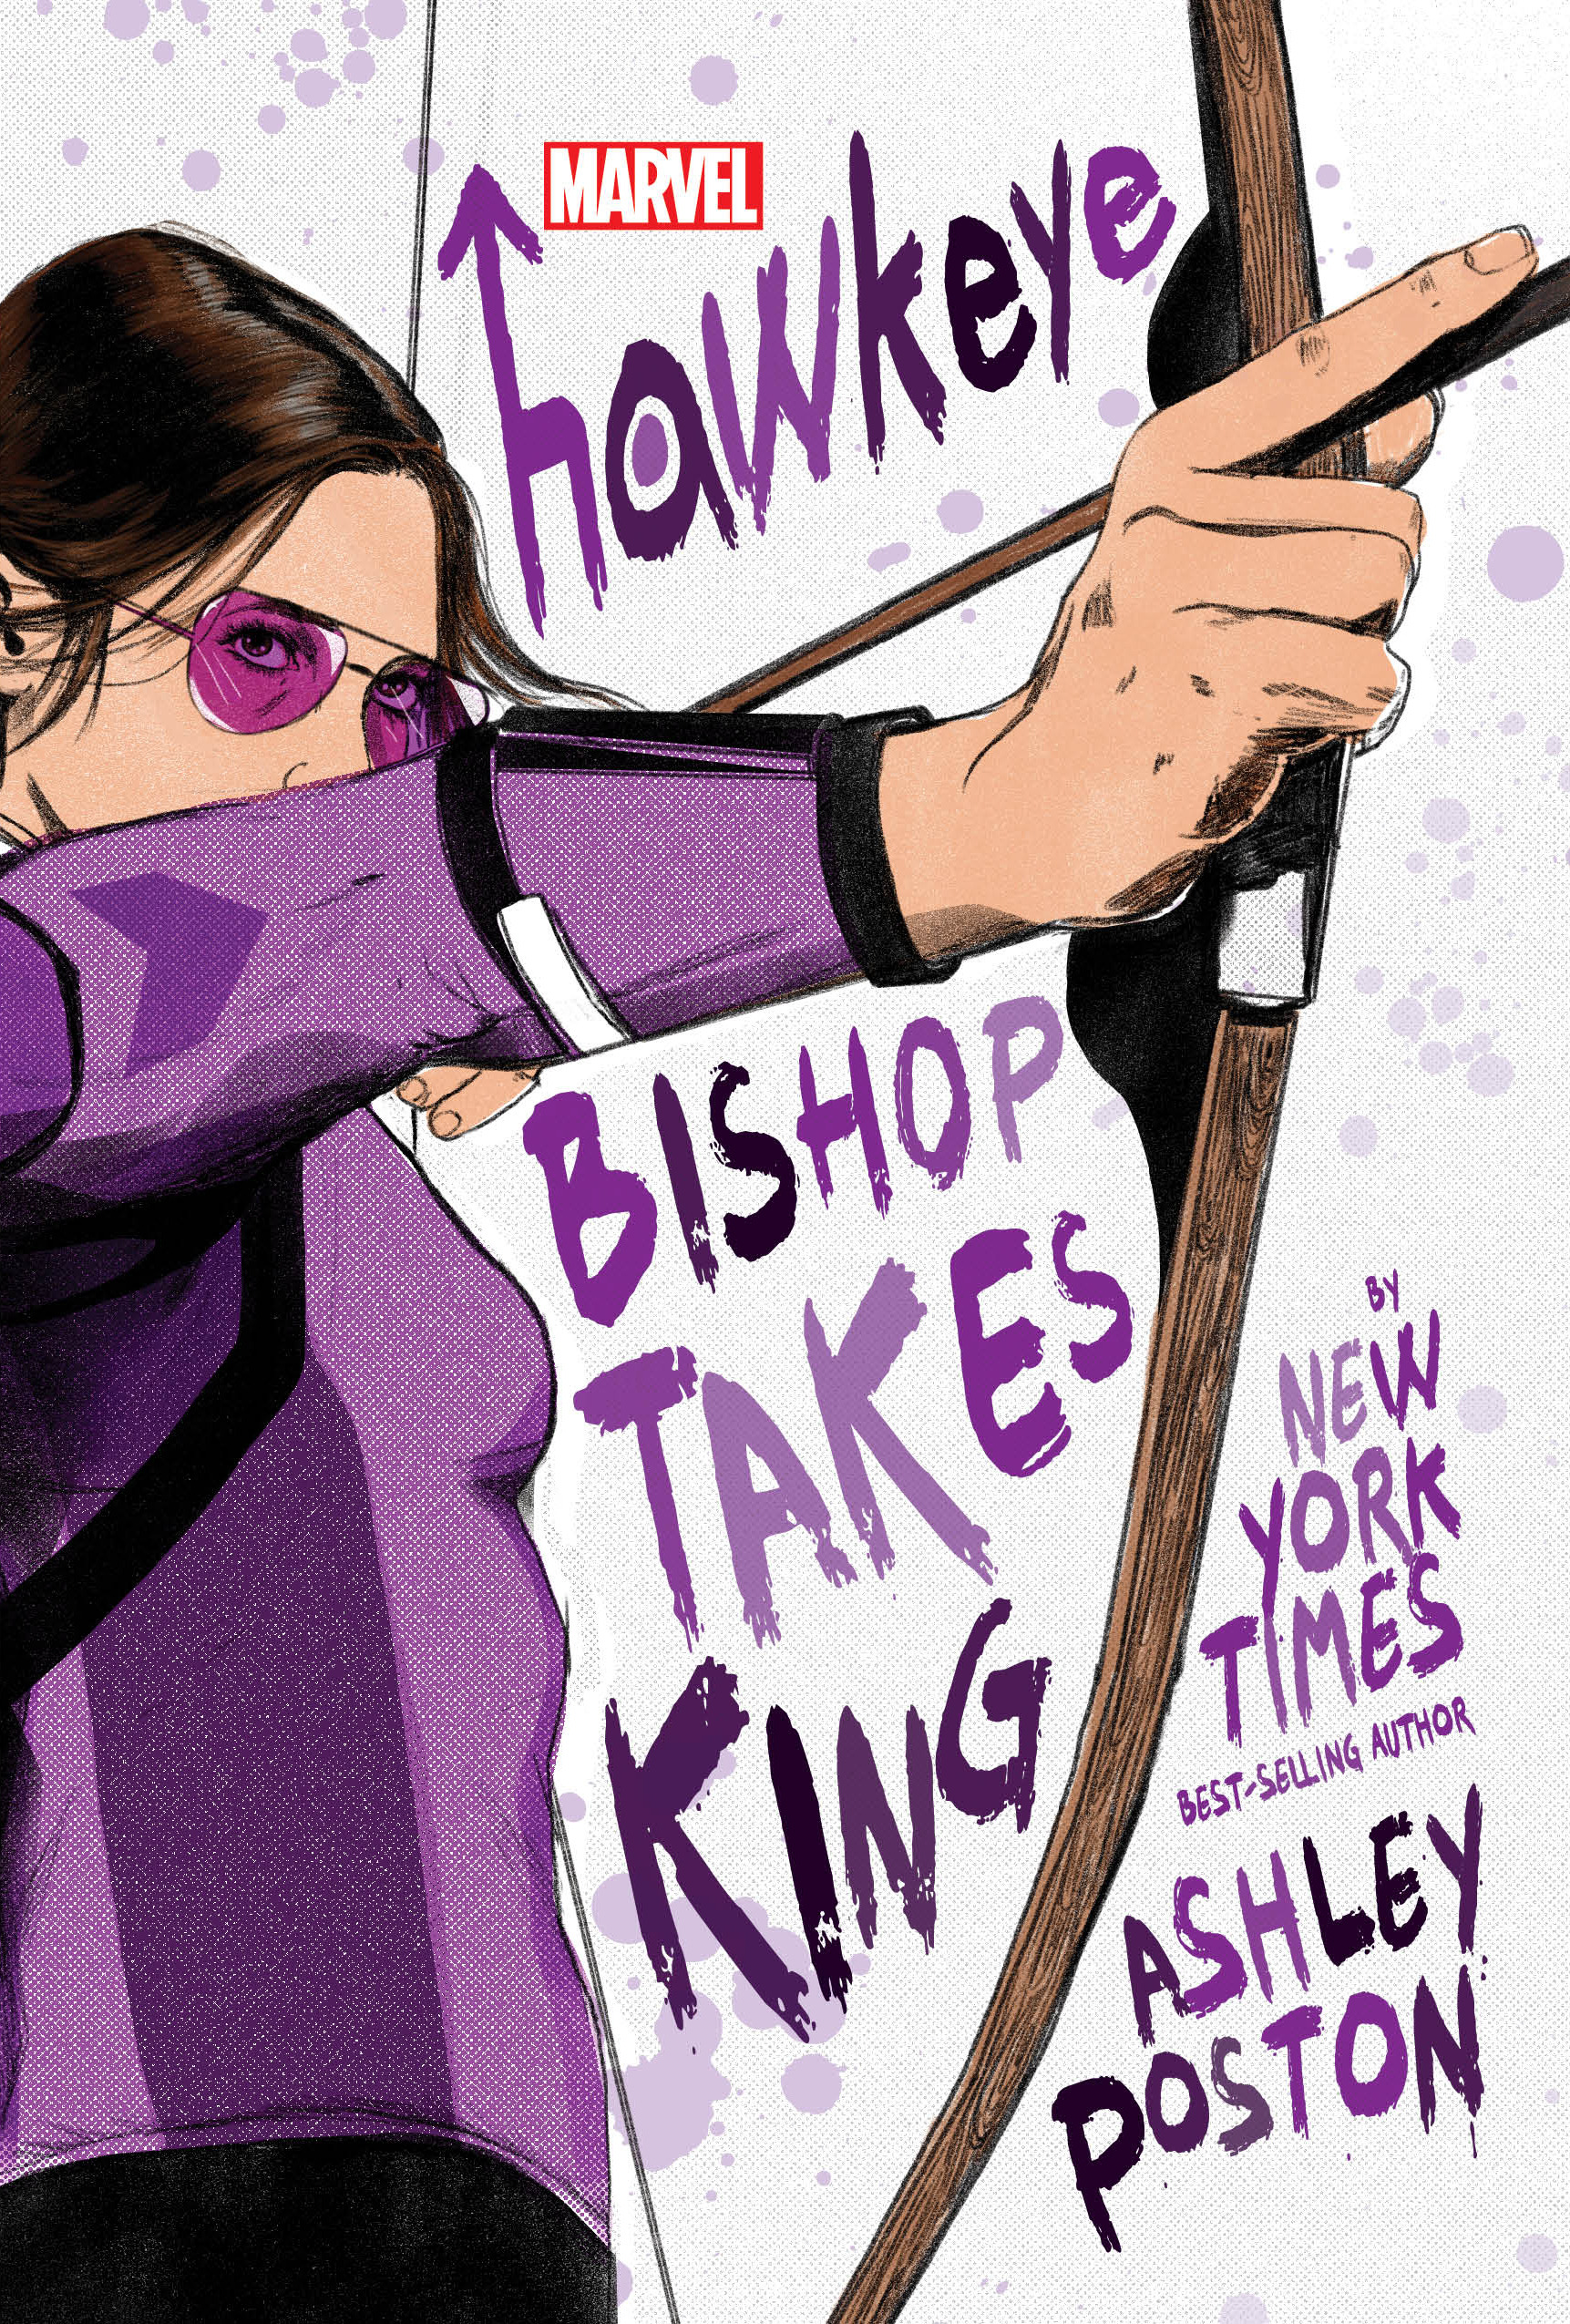 Hawkeye: Bishop Takes King | Poston, Ashley (Auteur)